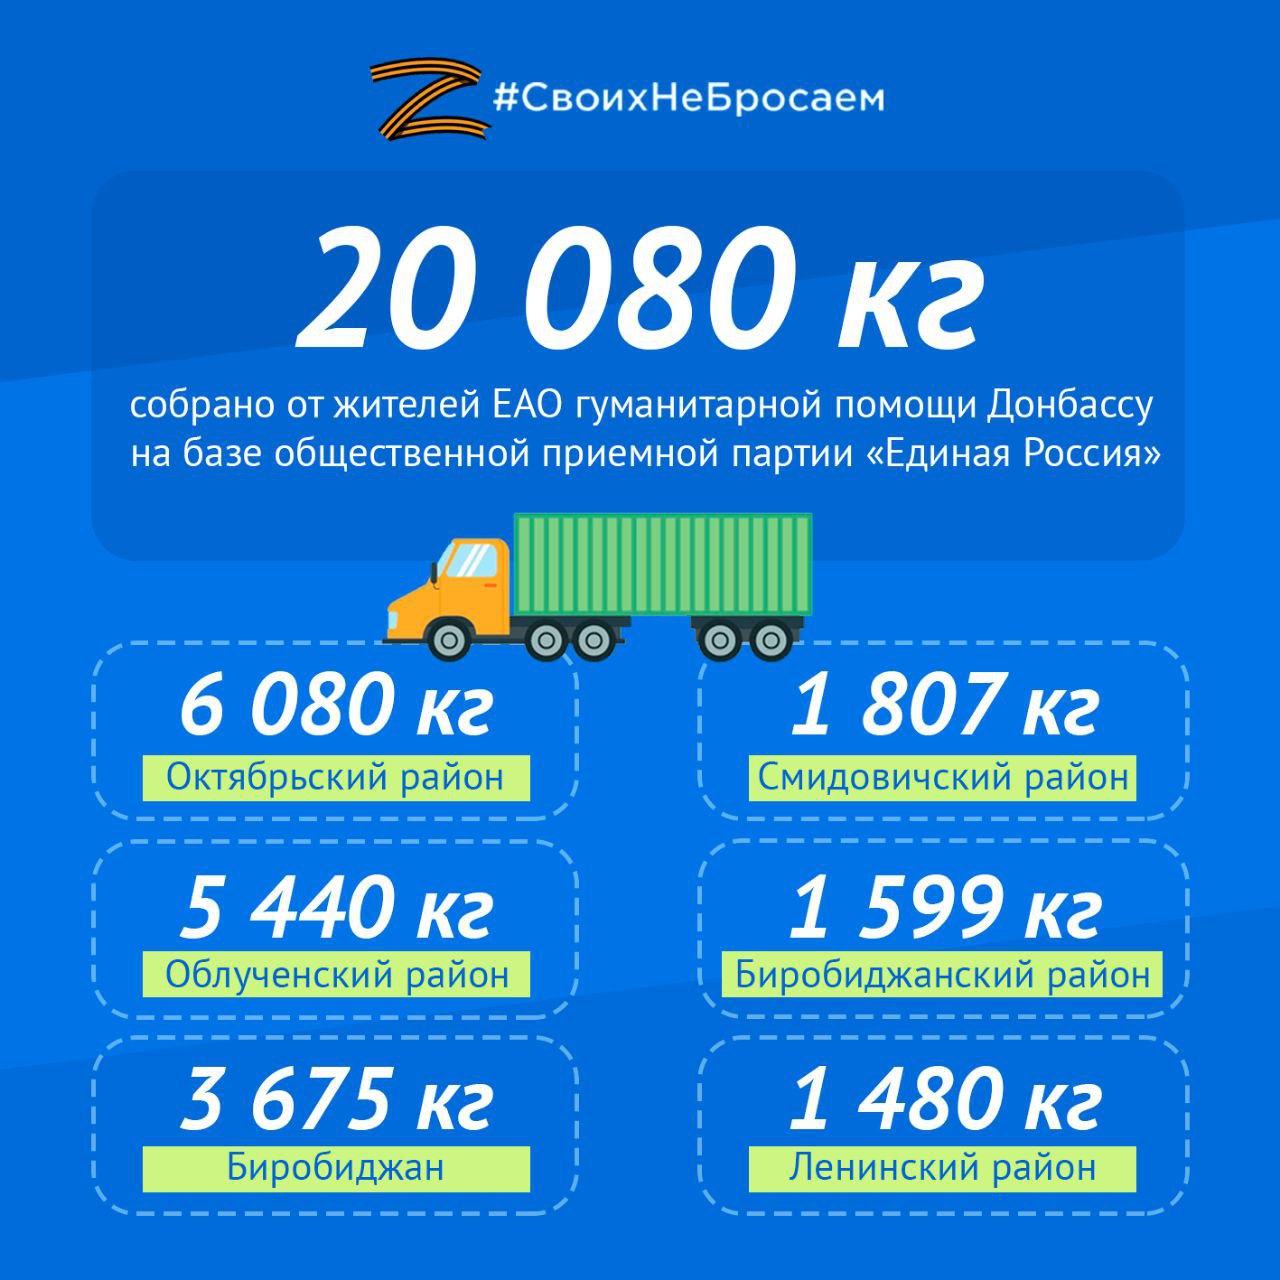 Более 20 тонн гуманитарной помощи передала ЕАО жителям ЛНР и ДНР за полгода